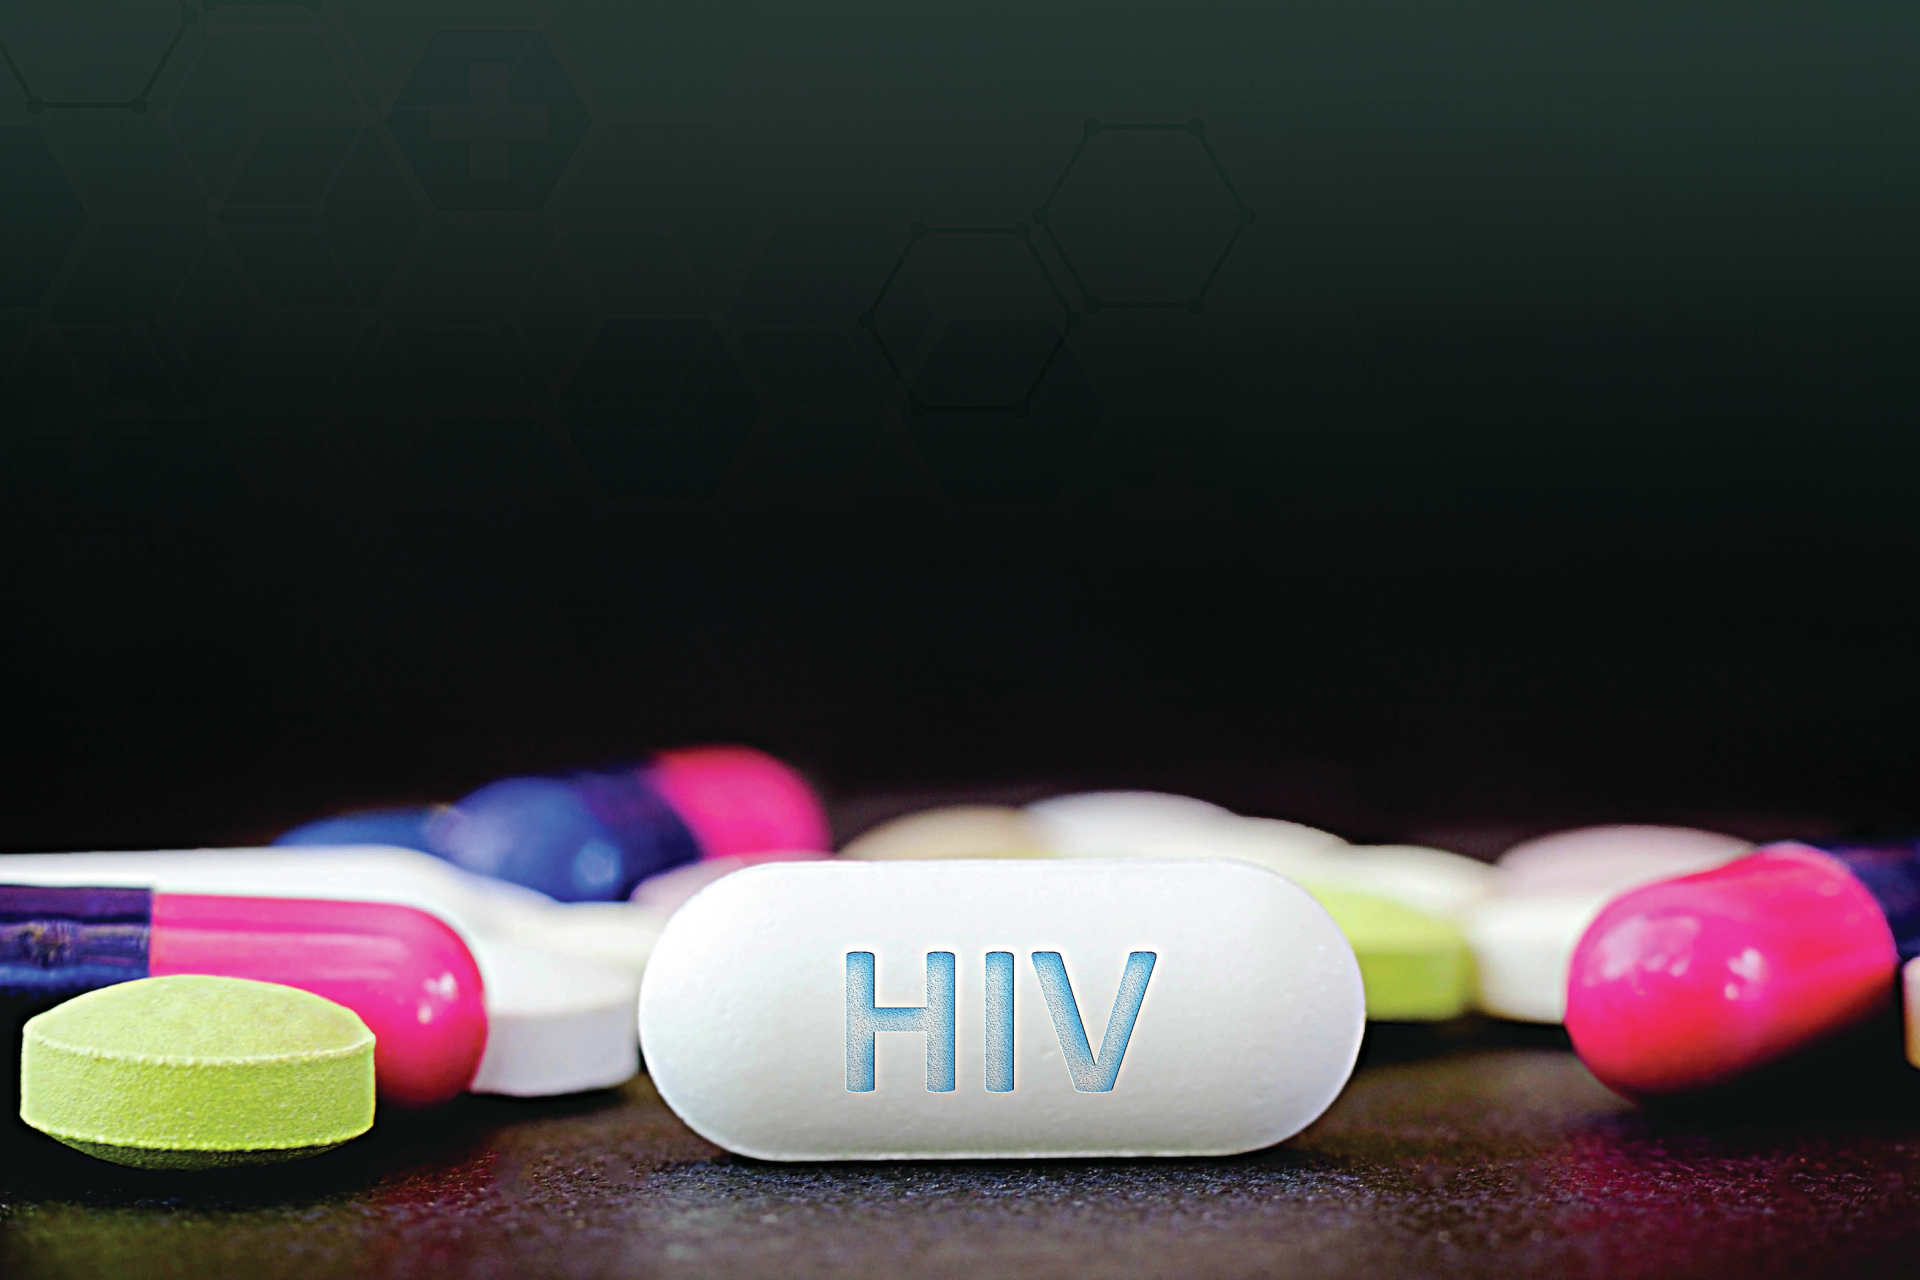 Cura do VIH. &#8220;As esperanças que estas notícias trazem preocupam-me&#8221;